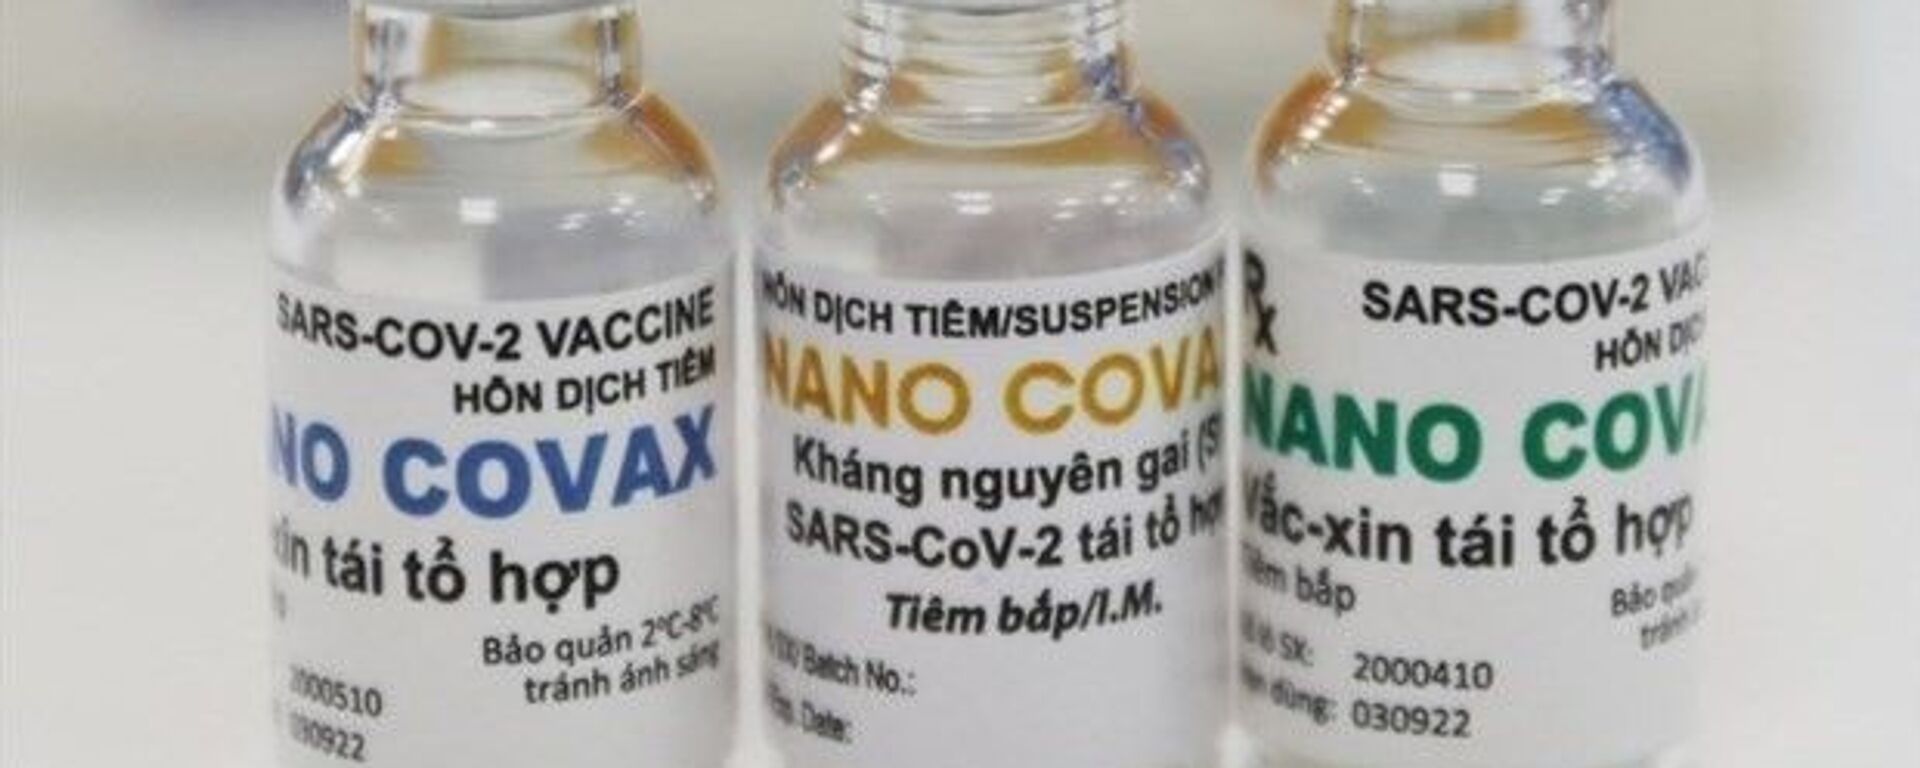 Vaccine Nano Covax được Hội đồng đạo đức thông qua, chờ cấp phép khẩn cấp - Sputnik Việt Nam, 1920, 30.08.2021